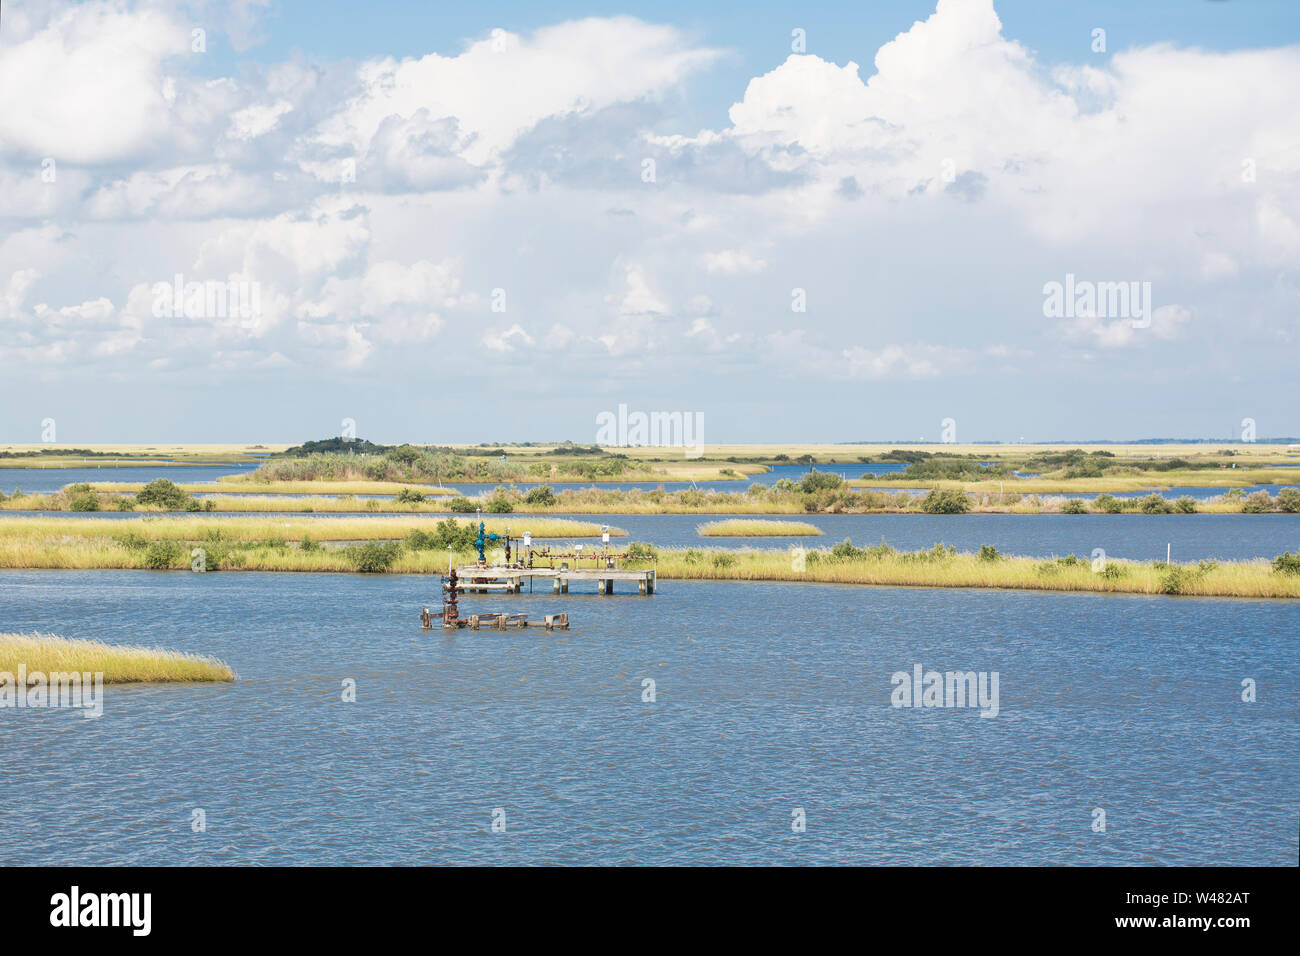 Louisiana Marshland at the Gulf of Mexico Stock Photo